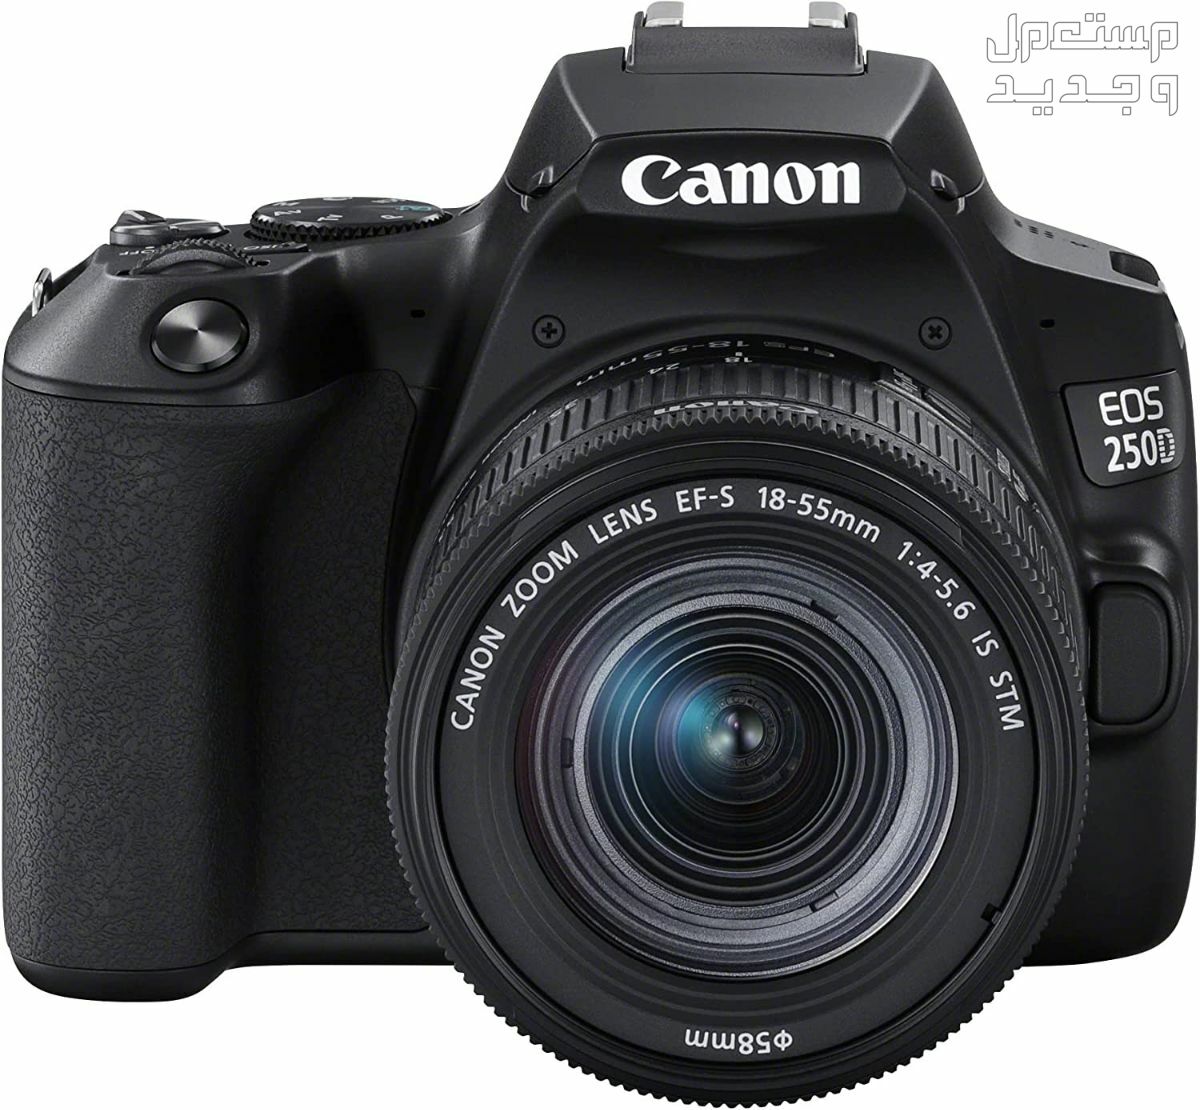 سعر ومميزات ومواصفات أرخص 5 كاميرات تصوير من كانون في البحرين مميزات كاميرا Canon EOS 250D